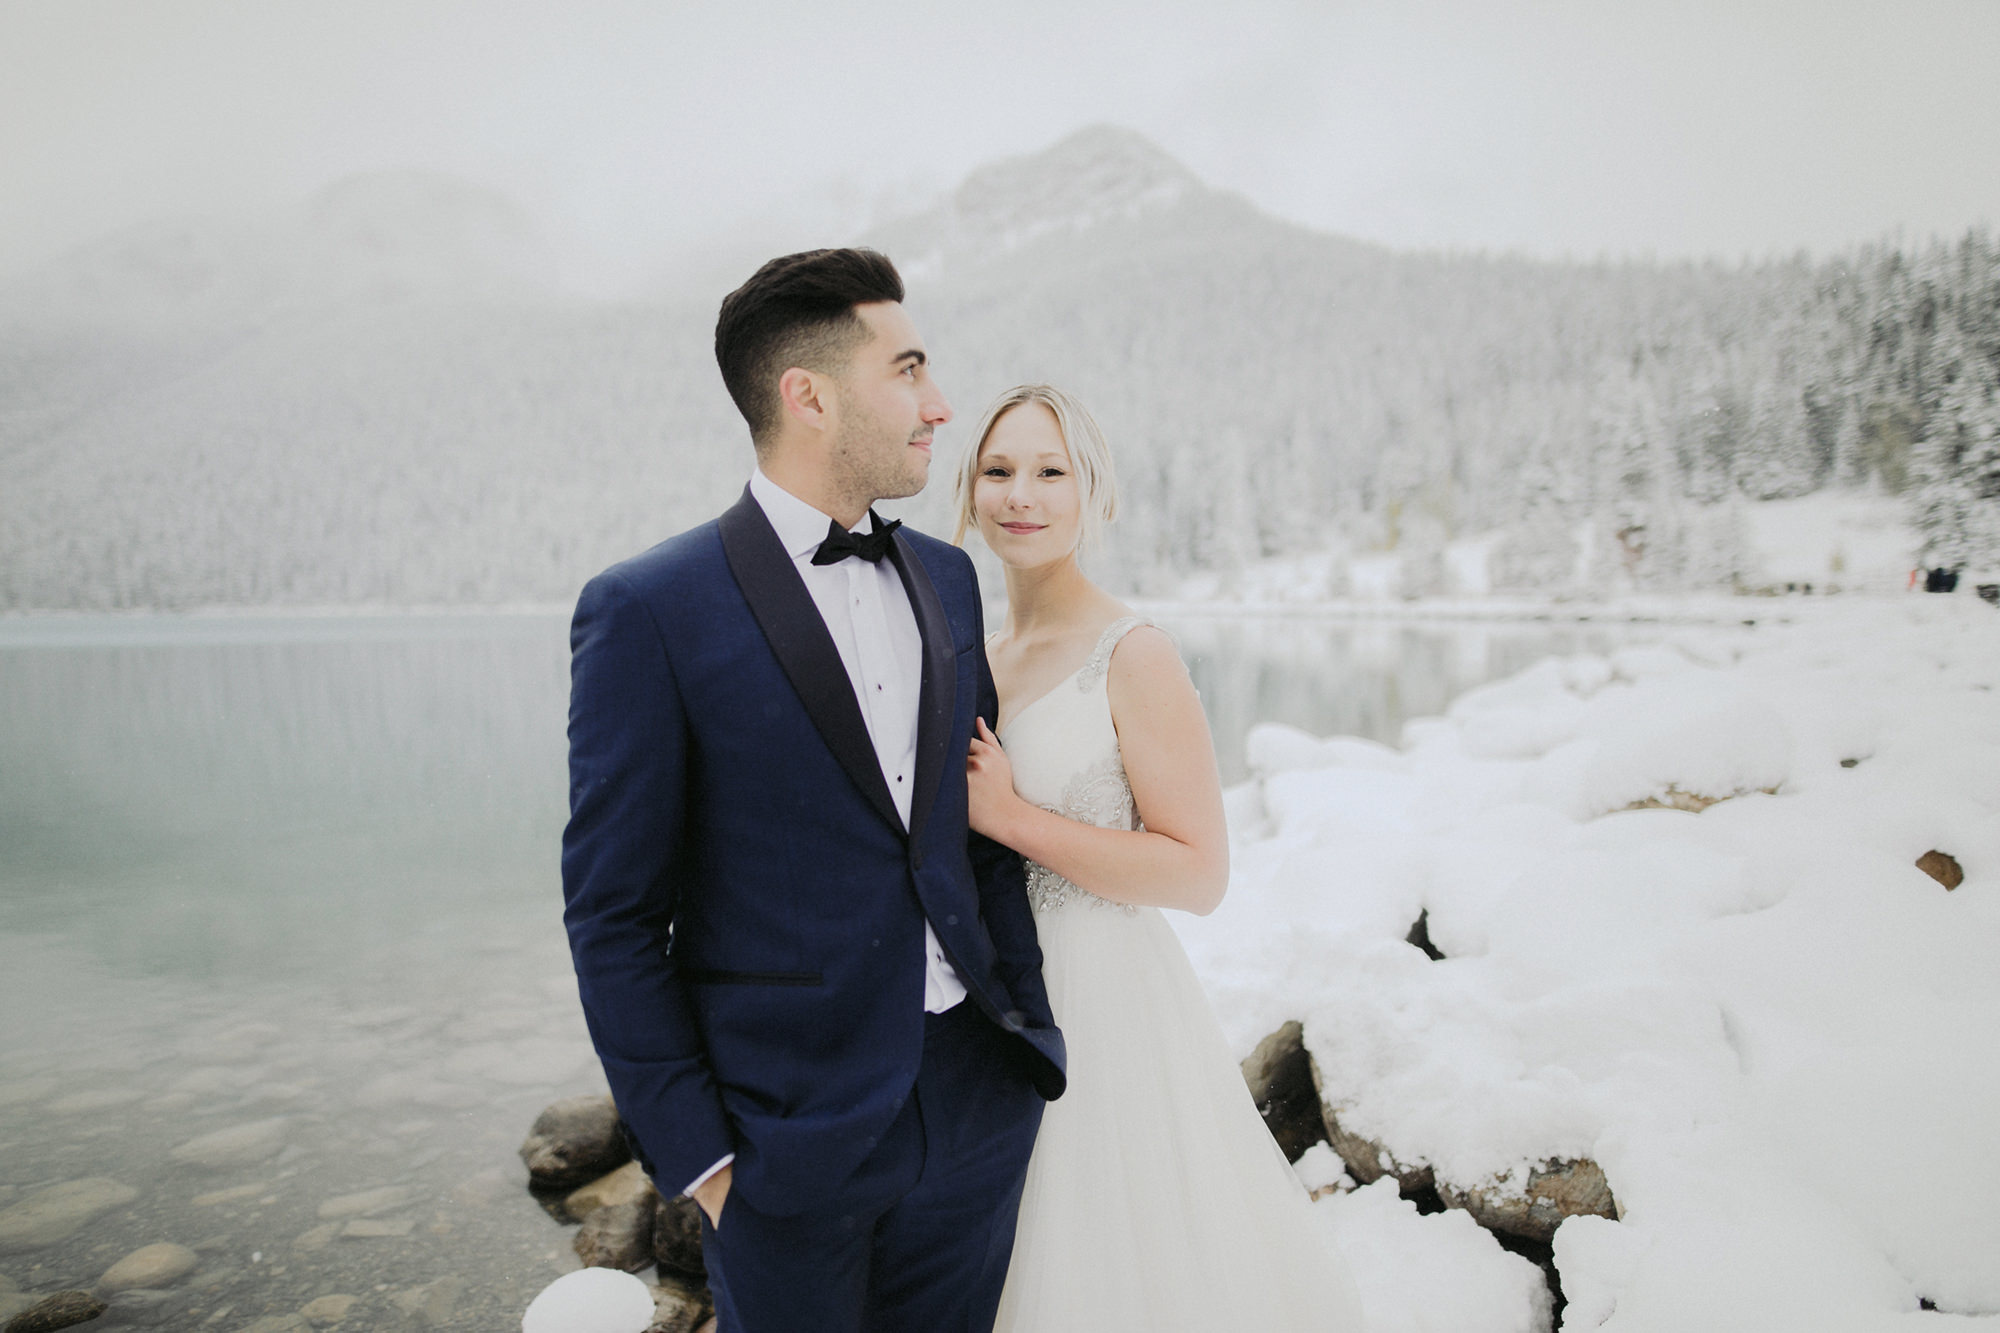 Lake Louise Winter Wedding -26.JPG